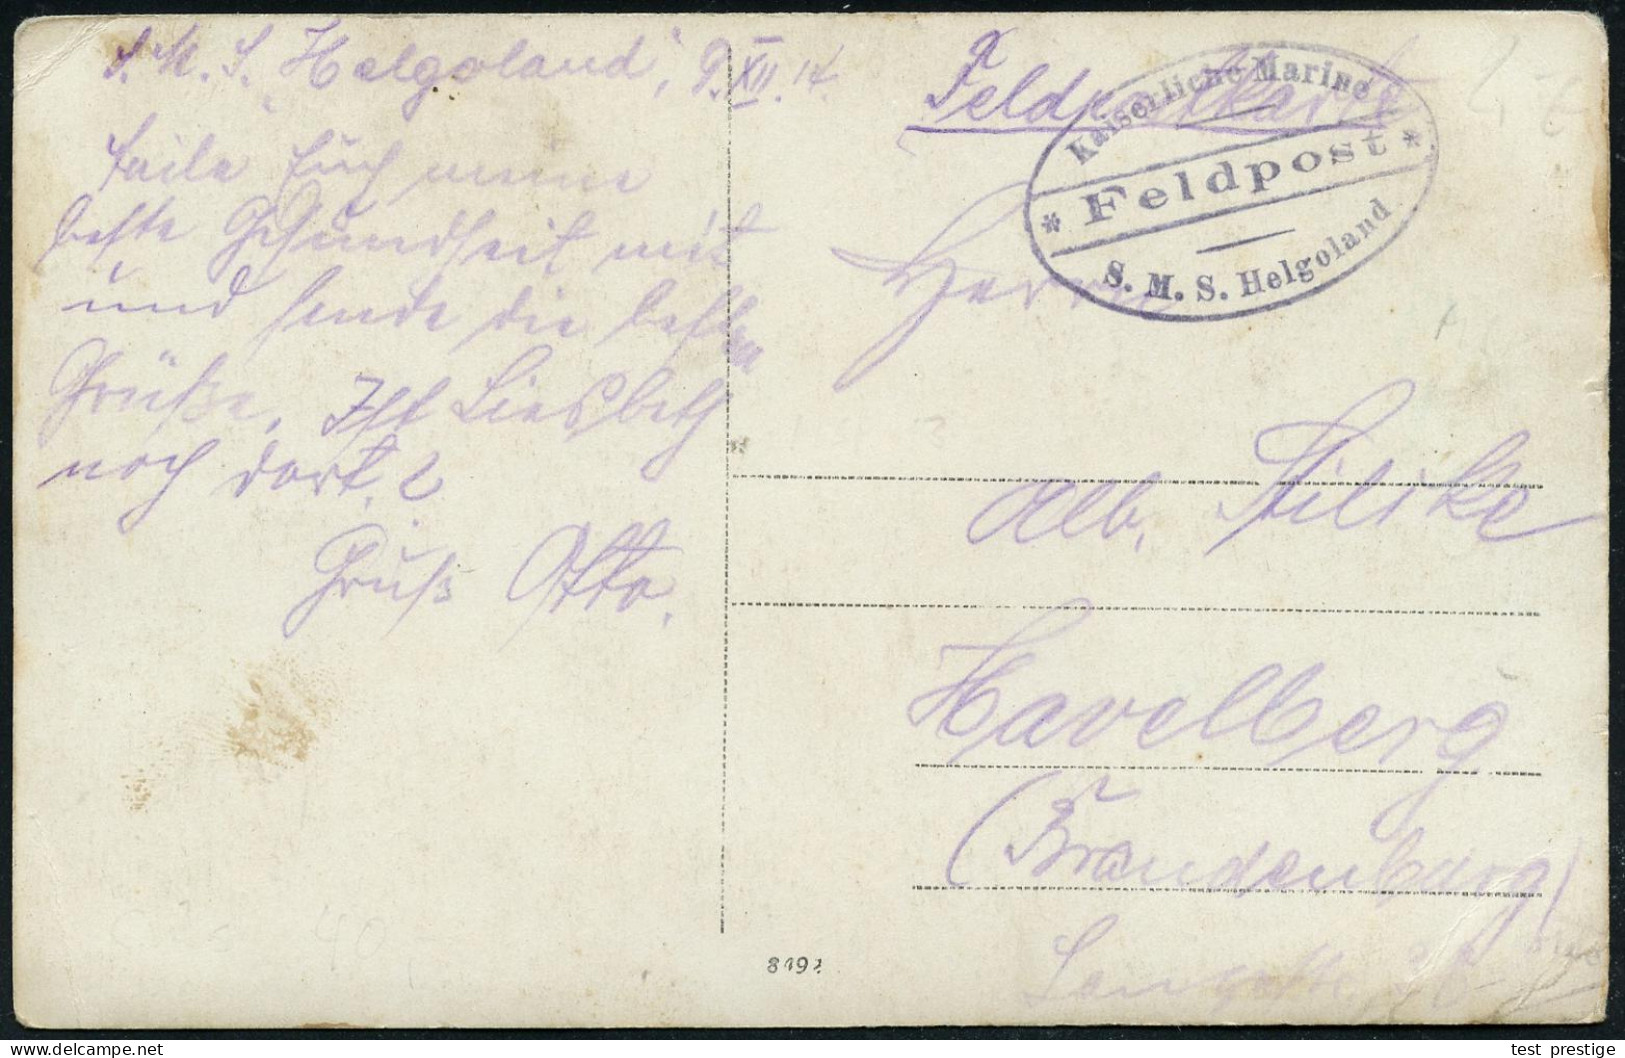 DEUTSCHES REICH 1914 (9.12.) MSP No.13, Viol. Ovalbrücken-Briefstempel: Kaiserliche Marine/* Feldpost */ S.M.S. Helgolan - Schiffahrt